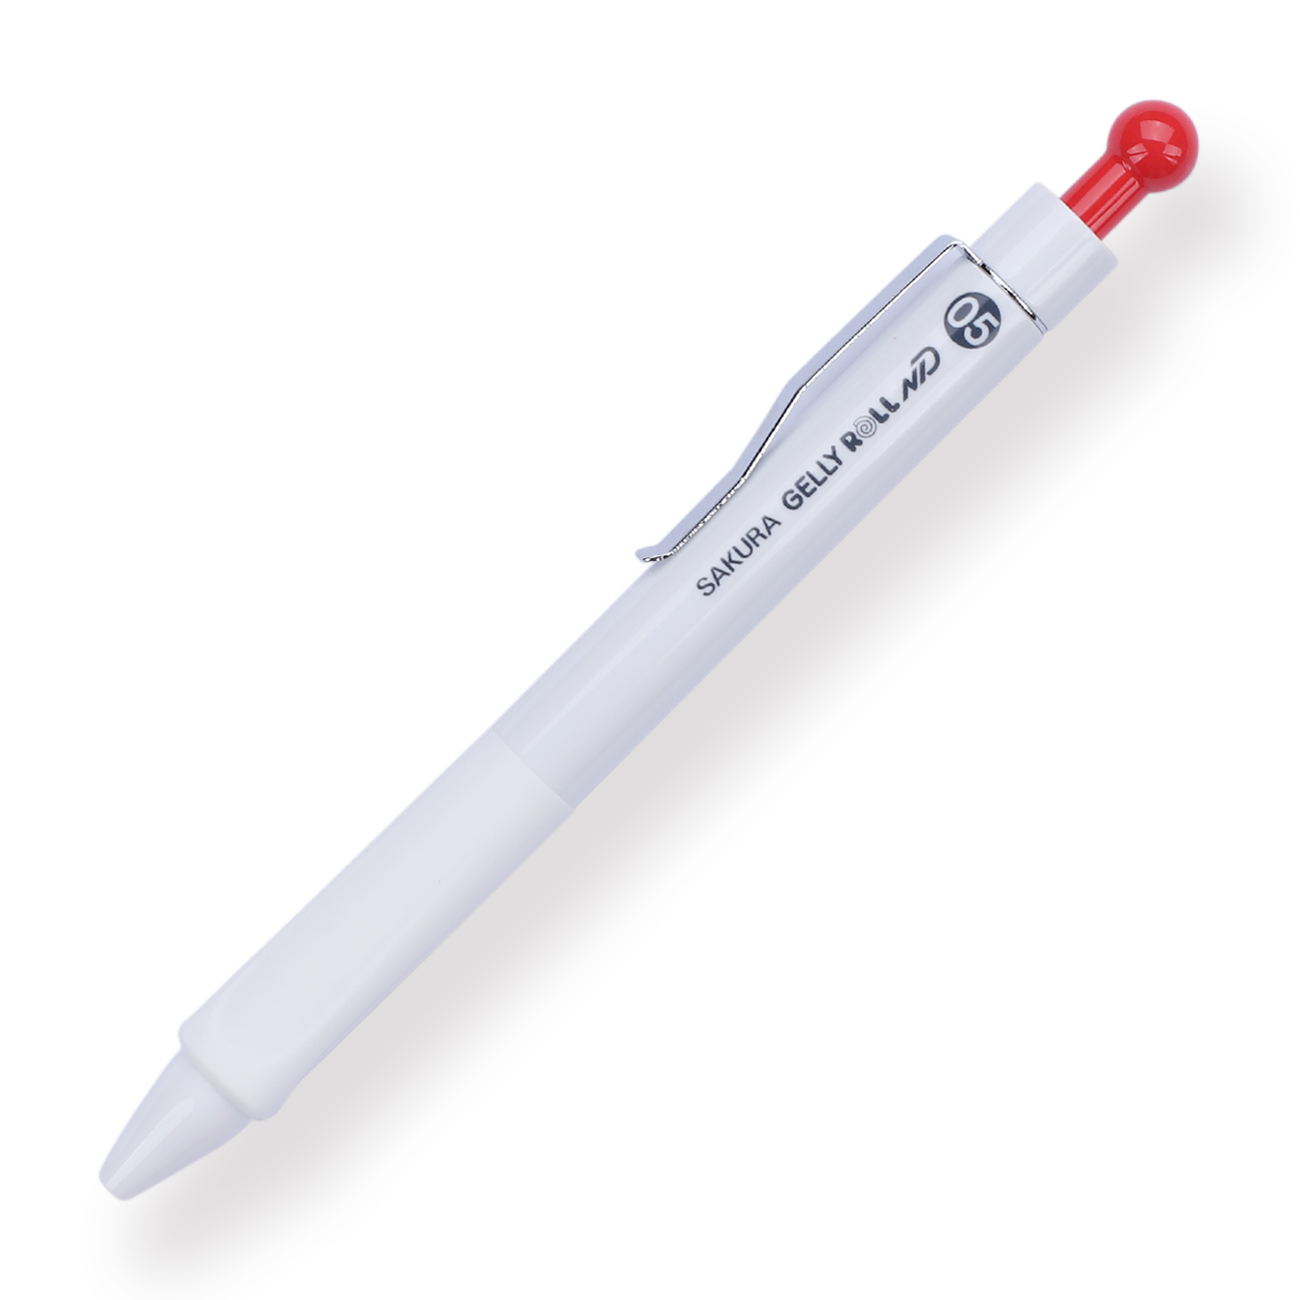 Sakura Press-Type Needle Gel Pen - 0.5 mm - Red - Stationery Pal